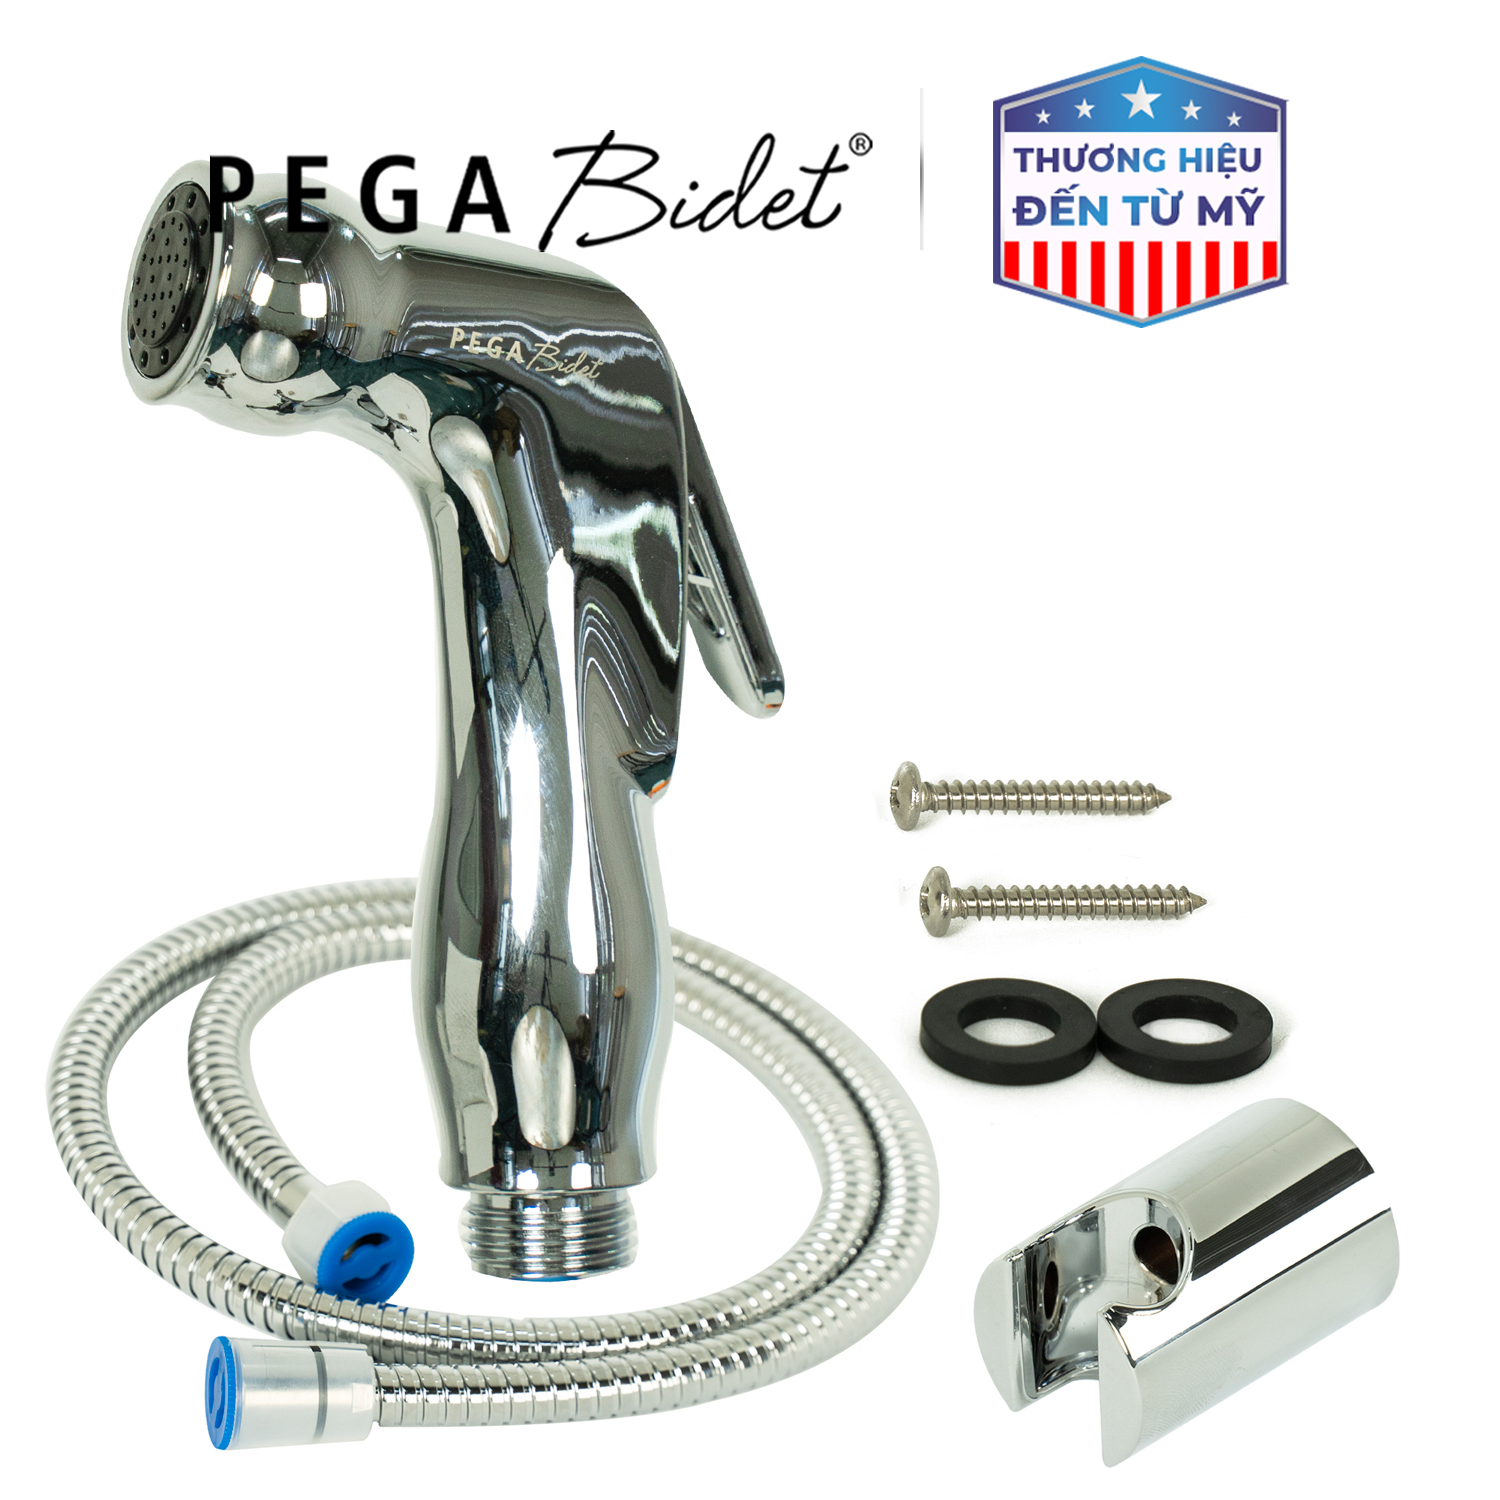 Bộ vòi xịt vệ sinh cầm tay PEGA Bidet HB500, dây cấp nước 1.2m inox 304, đầu vòi bằng nhựa mạ crôm, giá treo mạ crôm, bảo hành 12 tháng